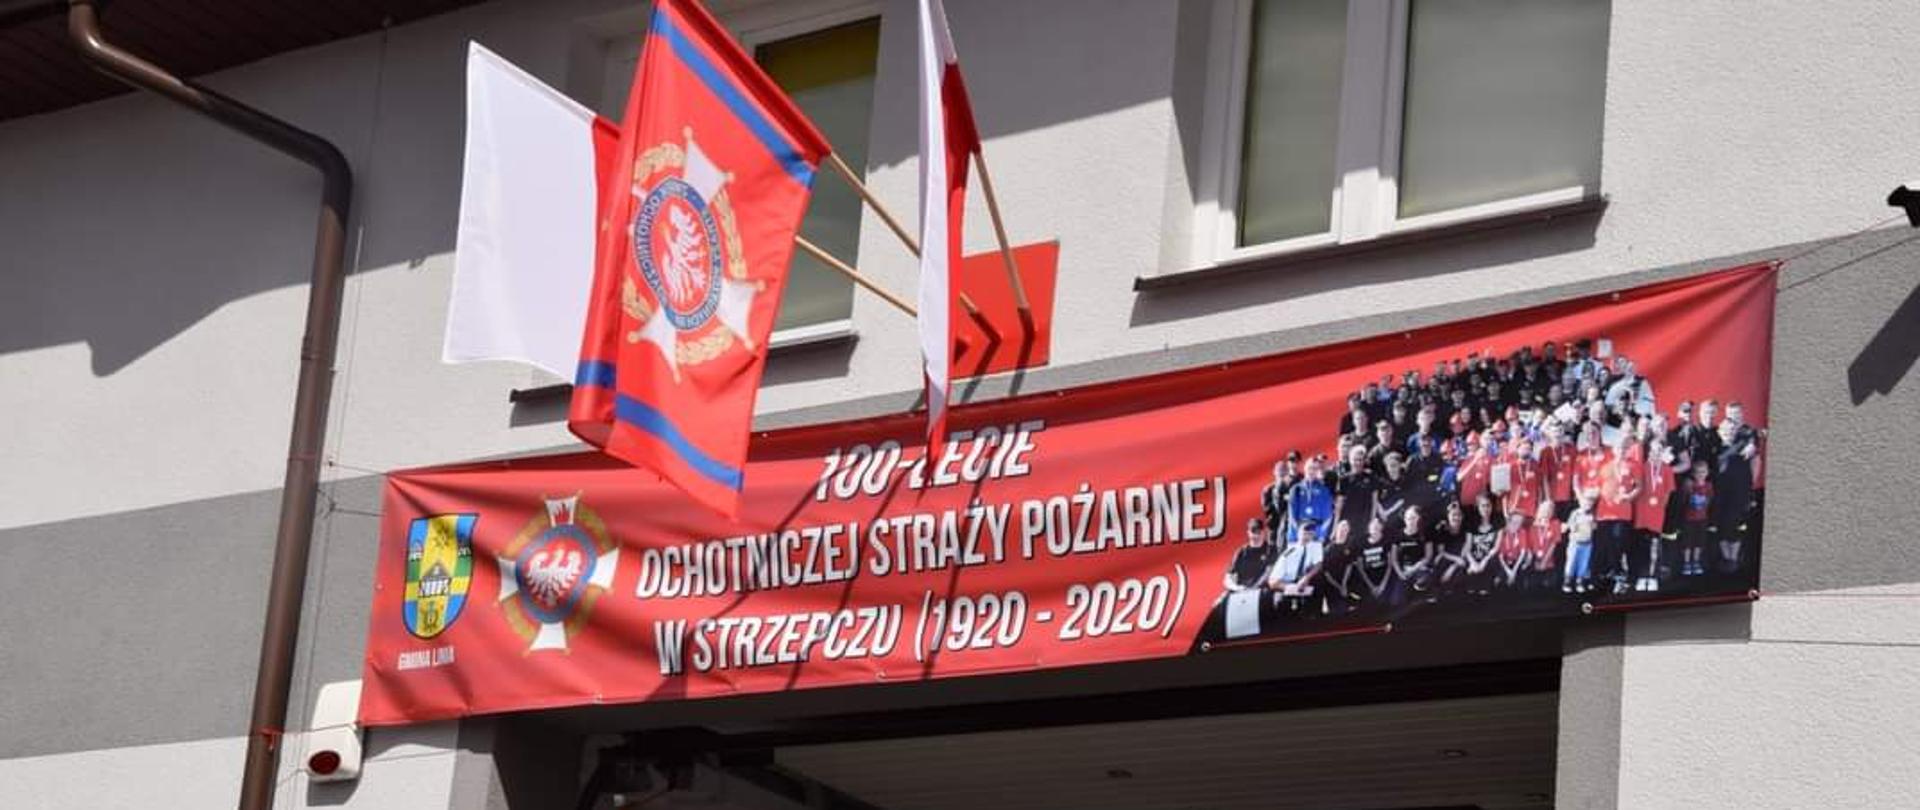 Na zdjęciu widać plakat z okazji 100 rocznicy OSP w Strzepczu, który zawieszony jest nad bramą garażową jednostki.